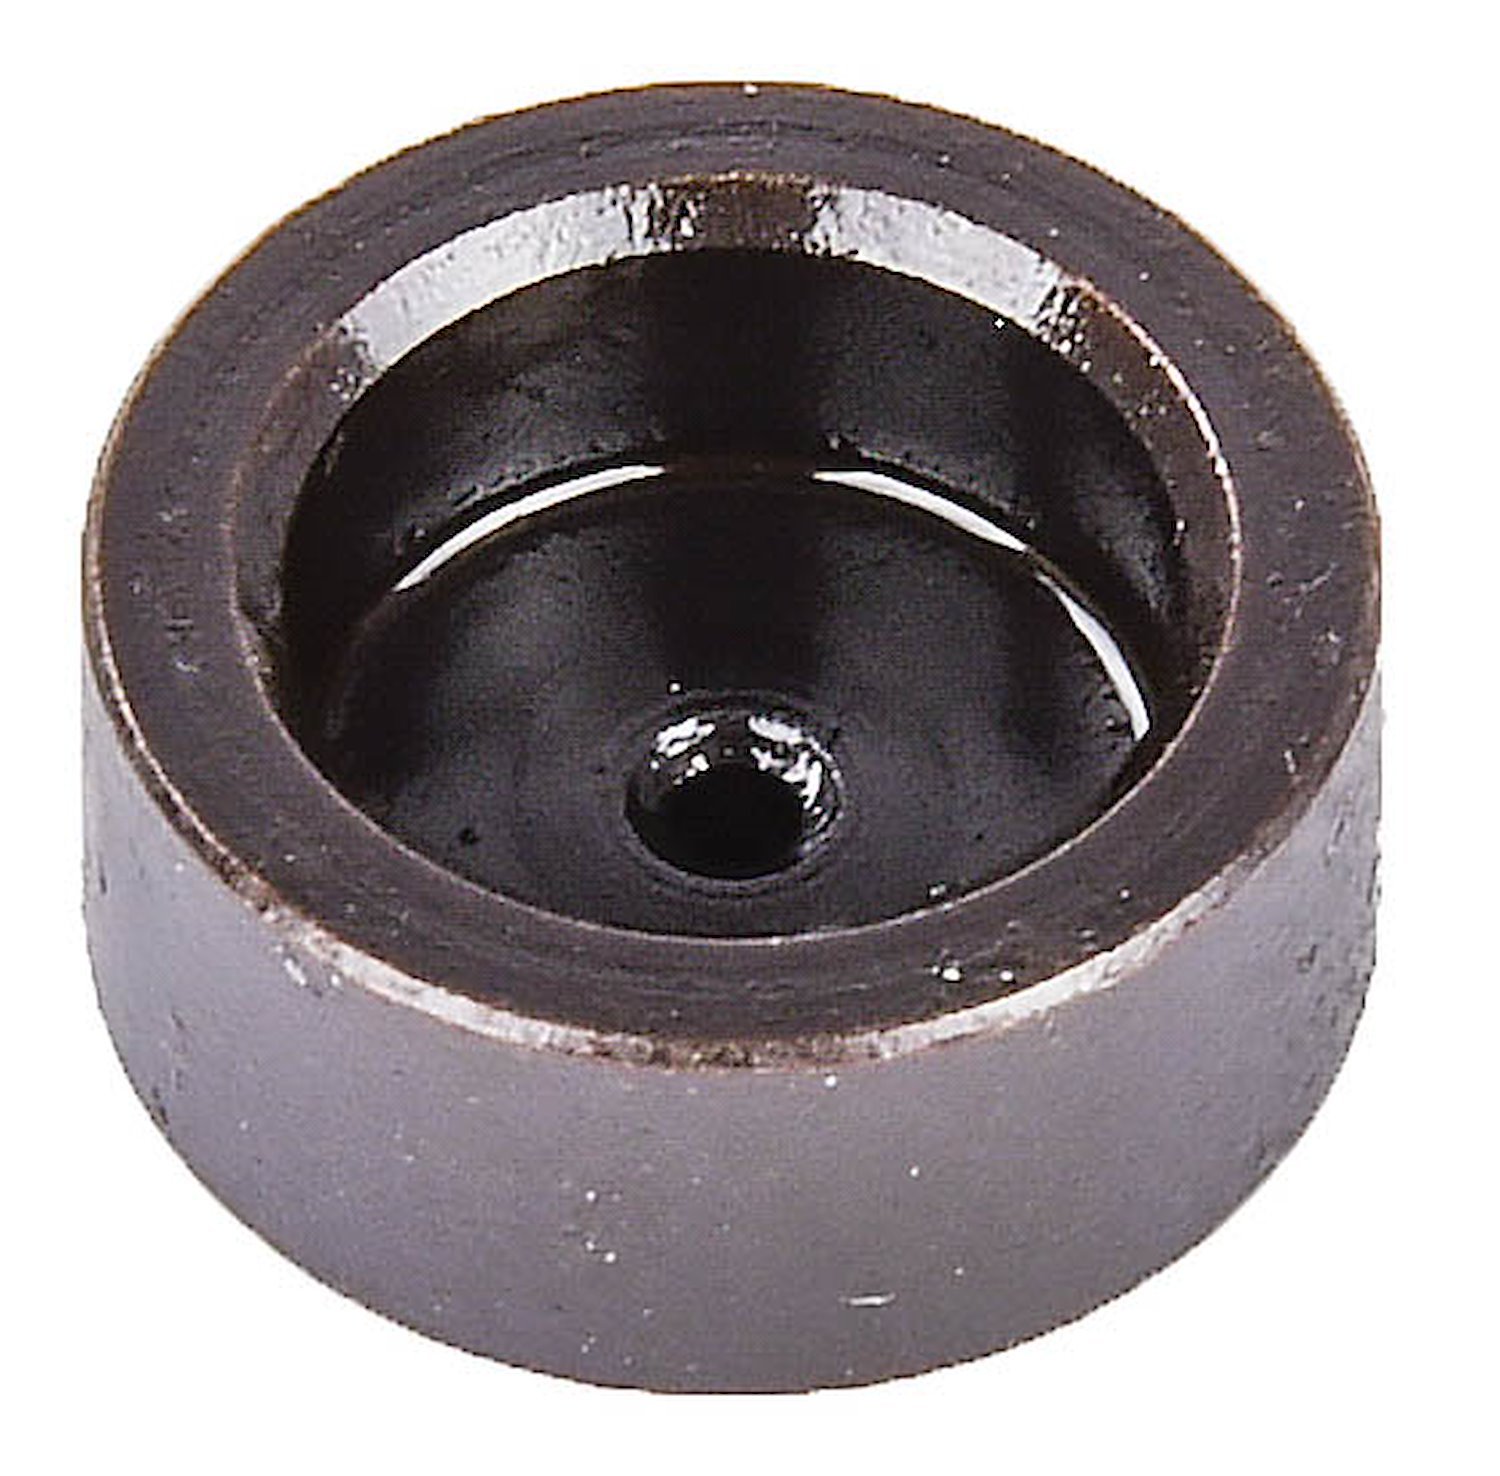 Lash Cap [8 mm Stem Diameter]